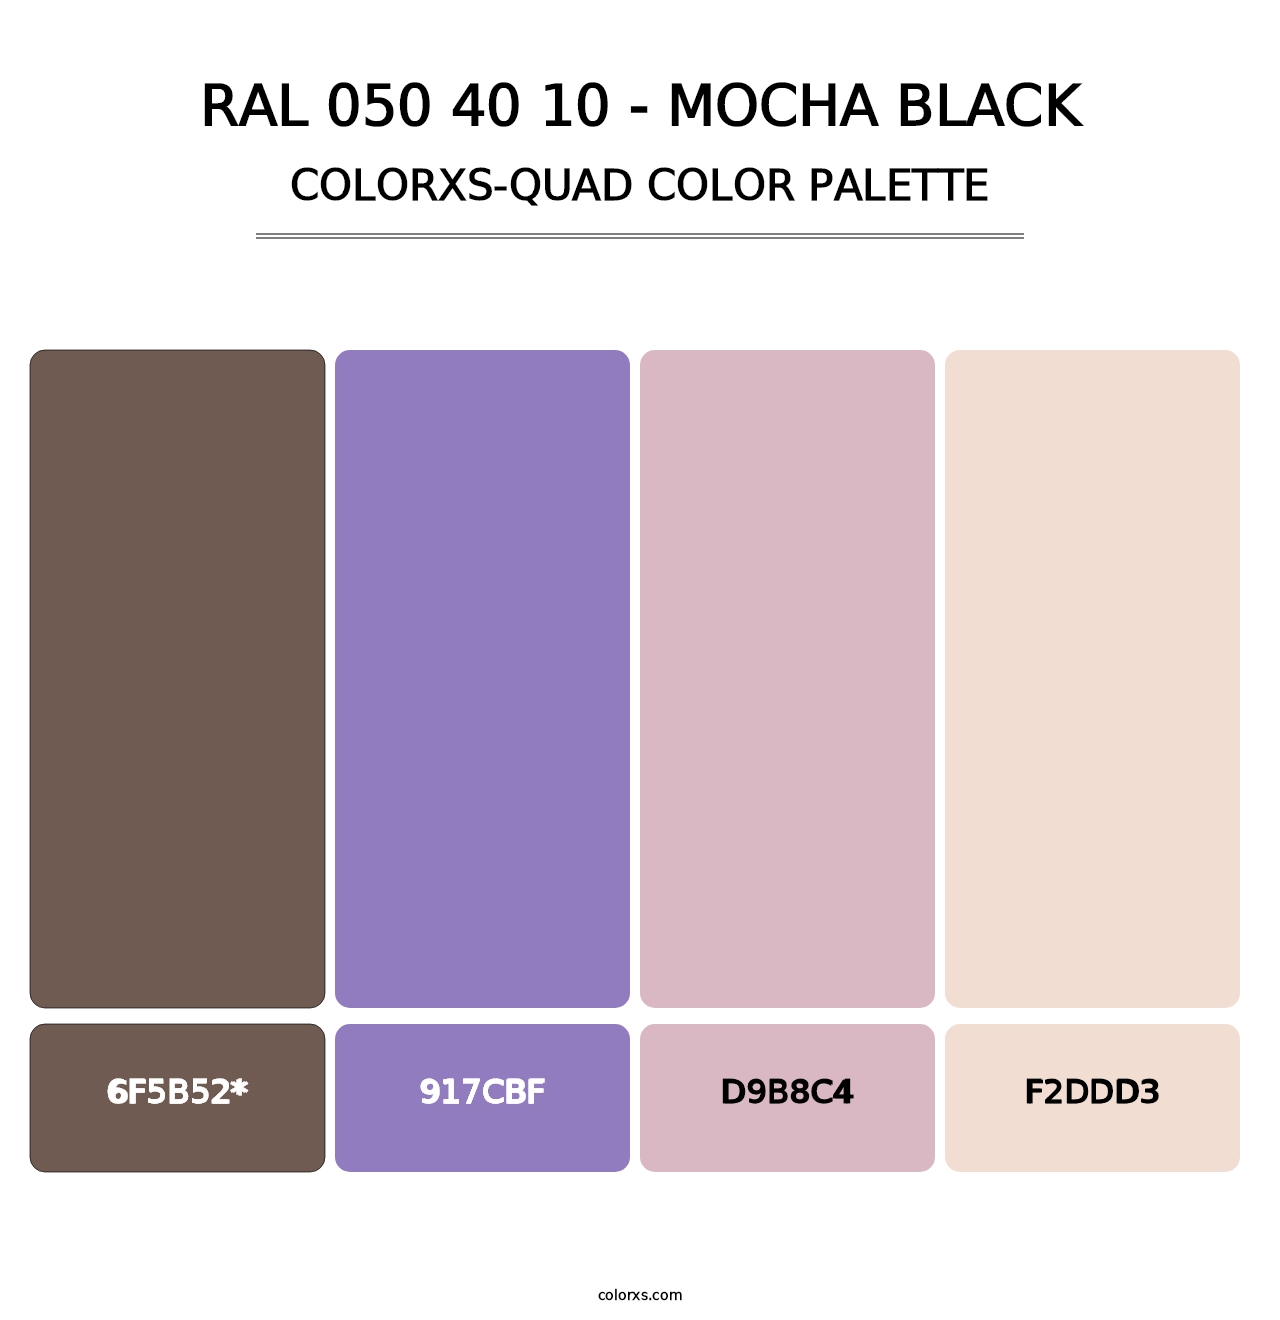 RAL 050 40 10 - Mocha Black - Colorxs Quad Palette